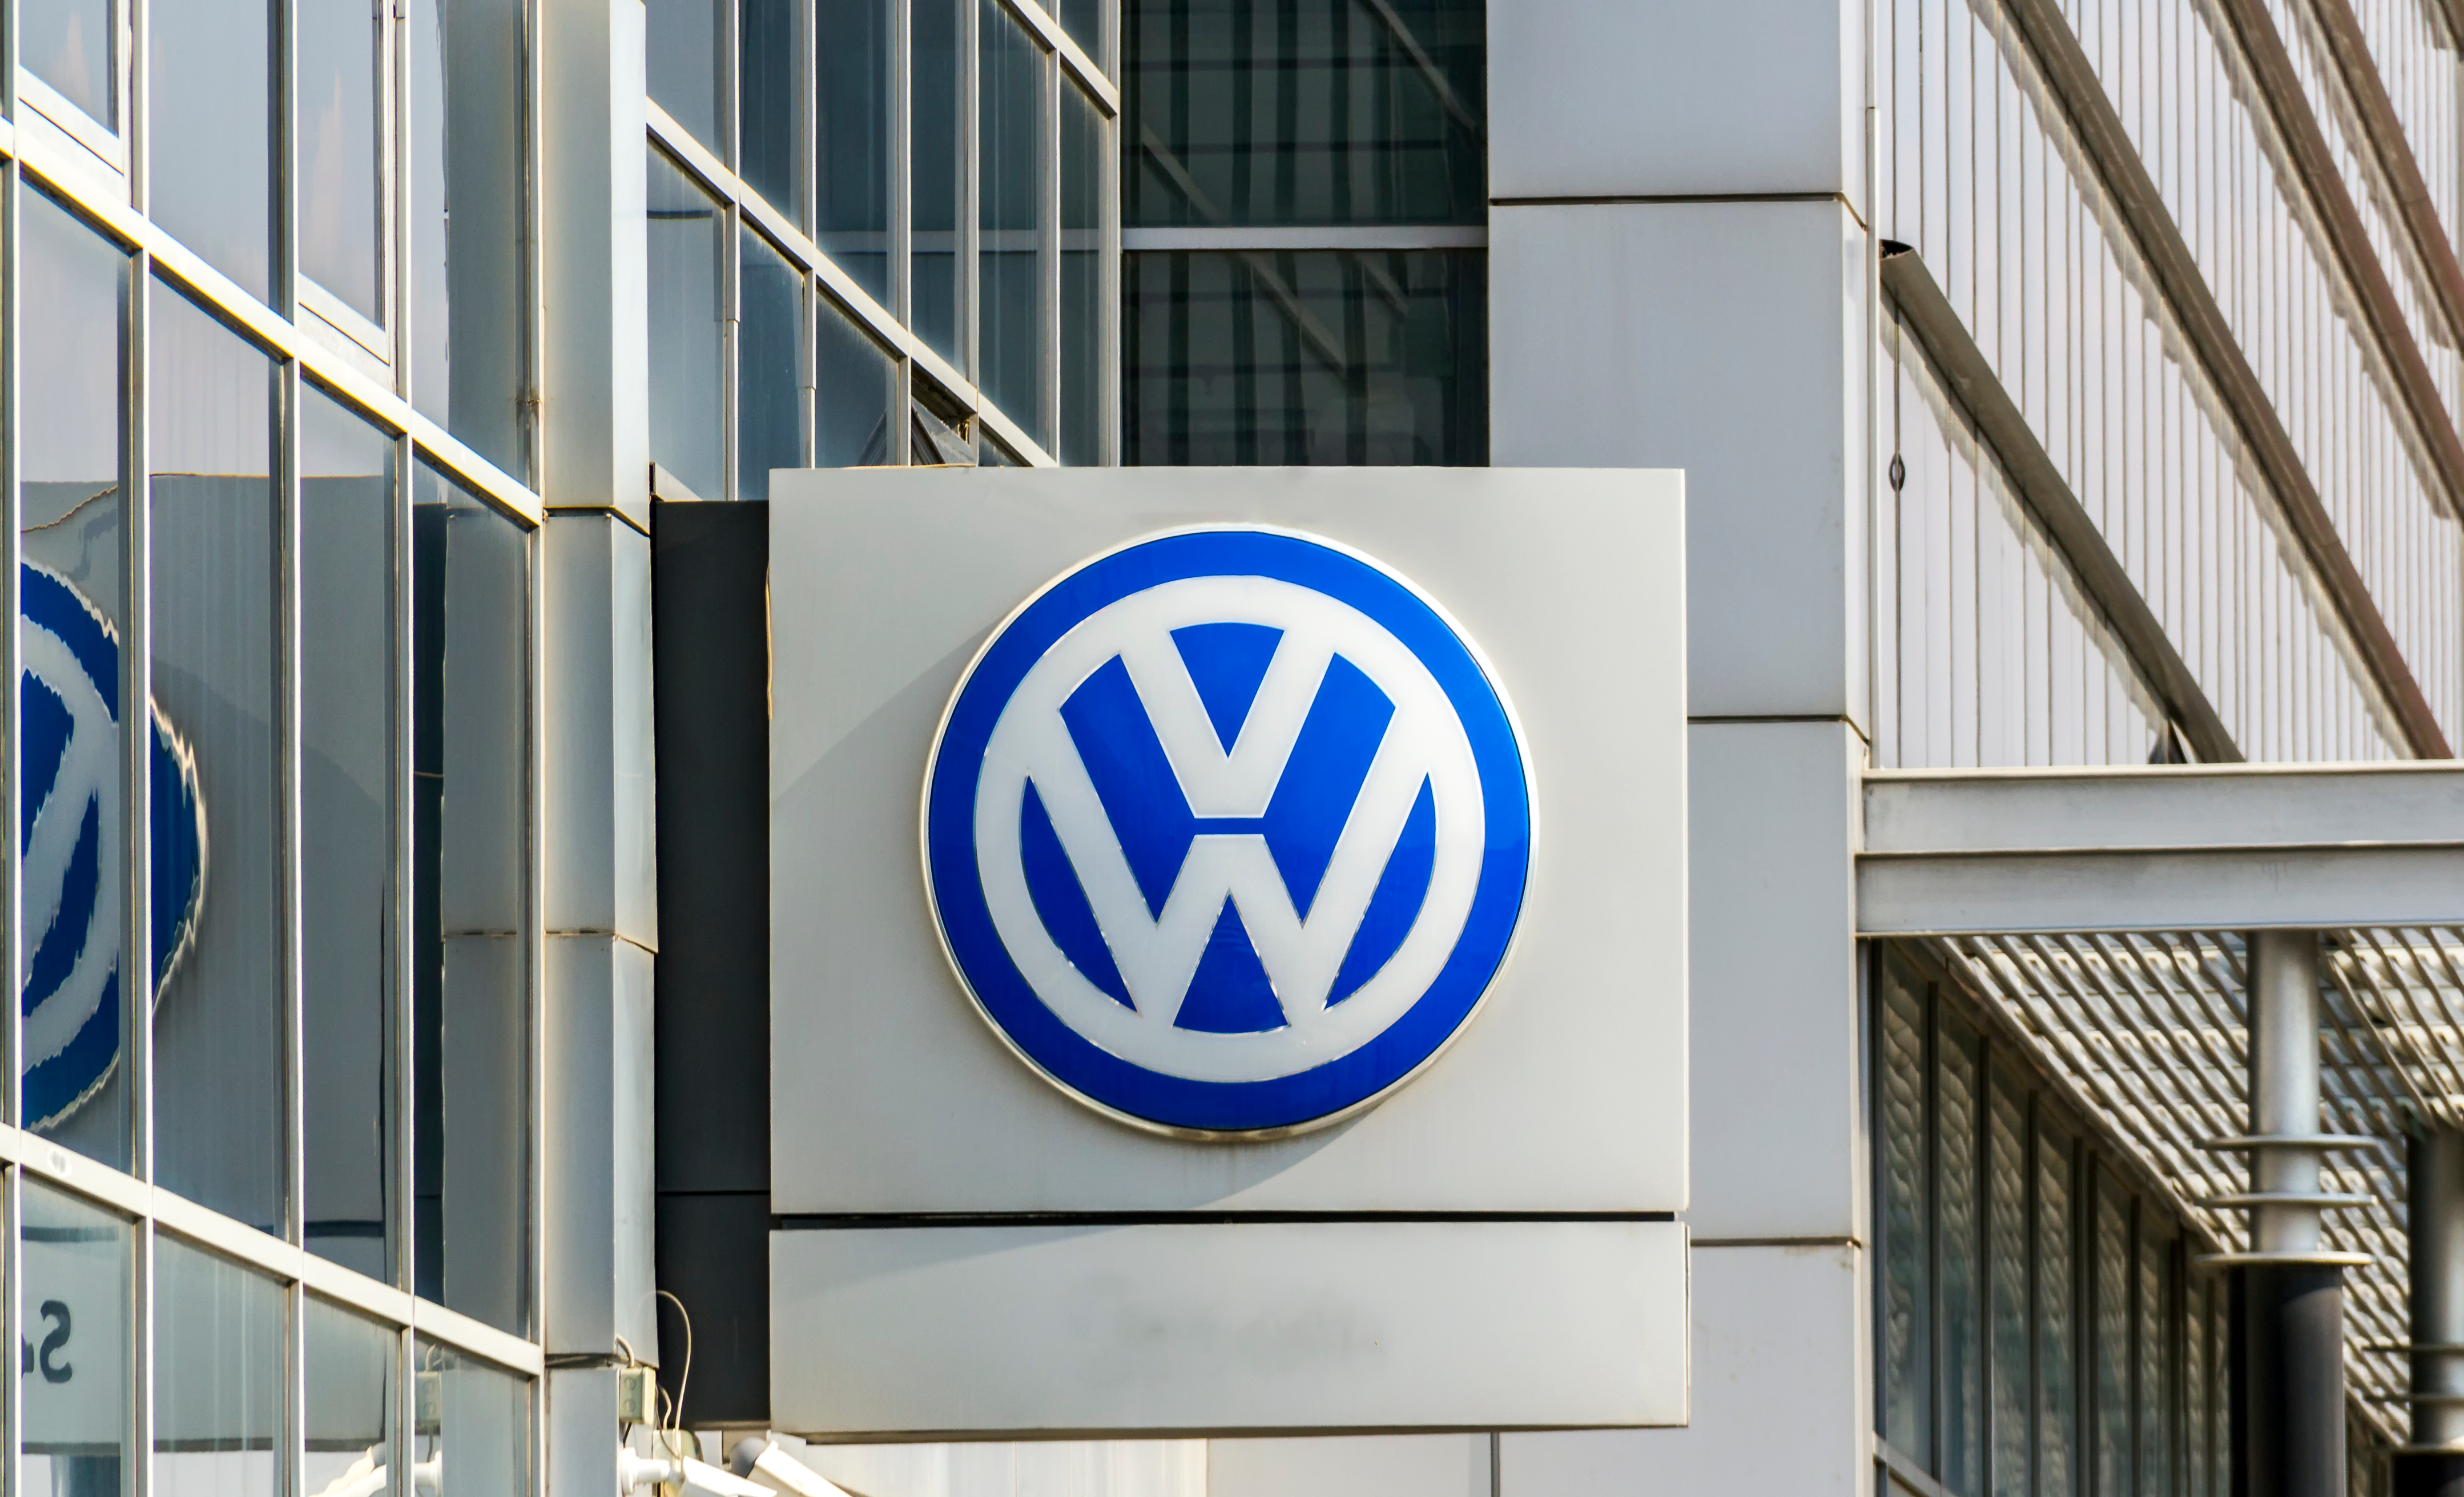 Păcăleală de 1 aprilie de la Volkswagen. Cum voiau să își schimbe numele